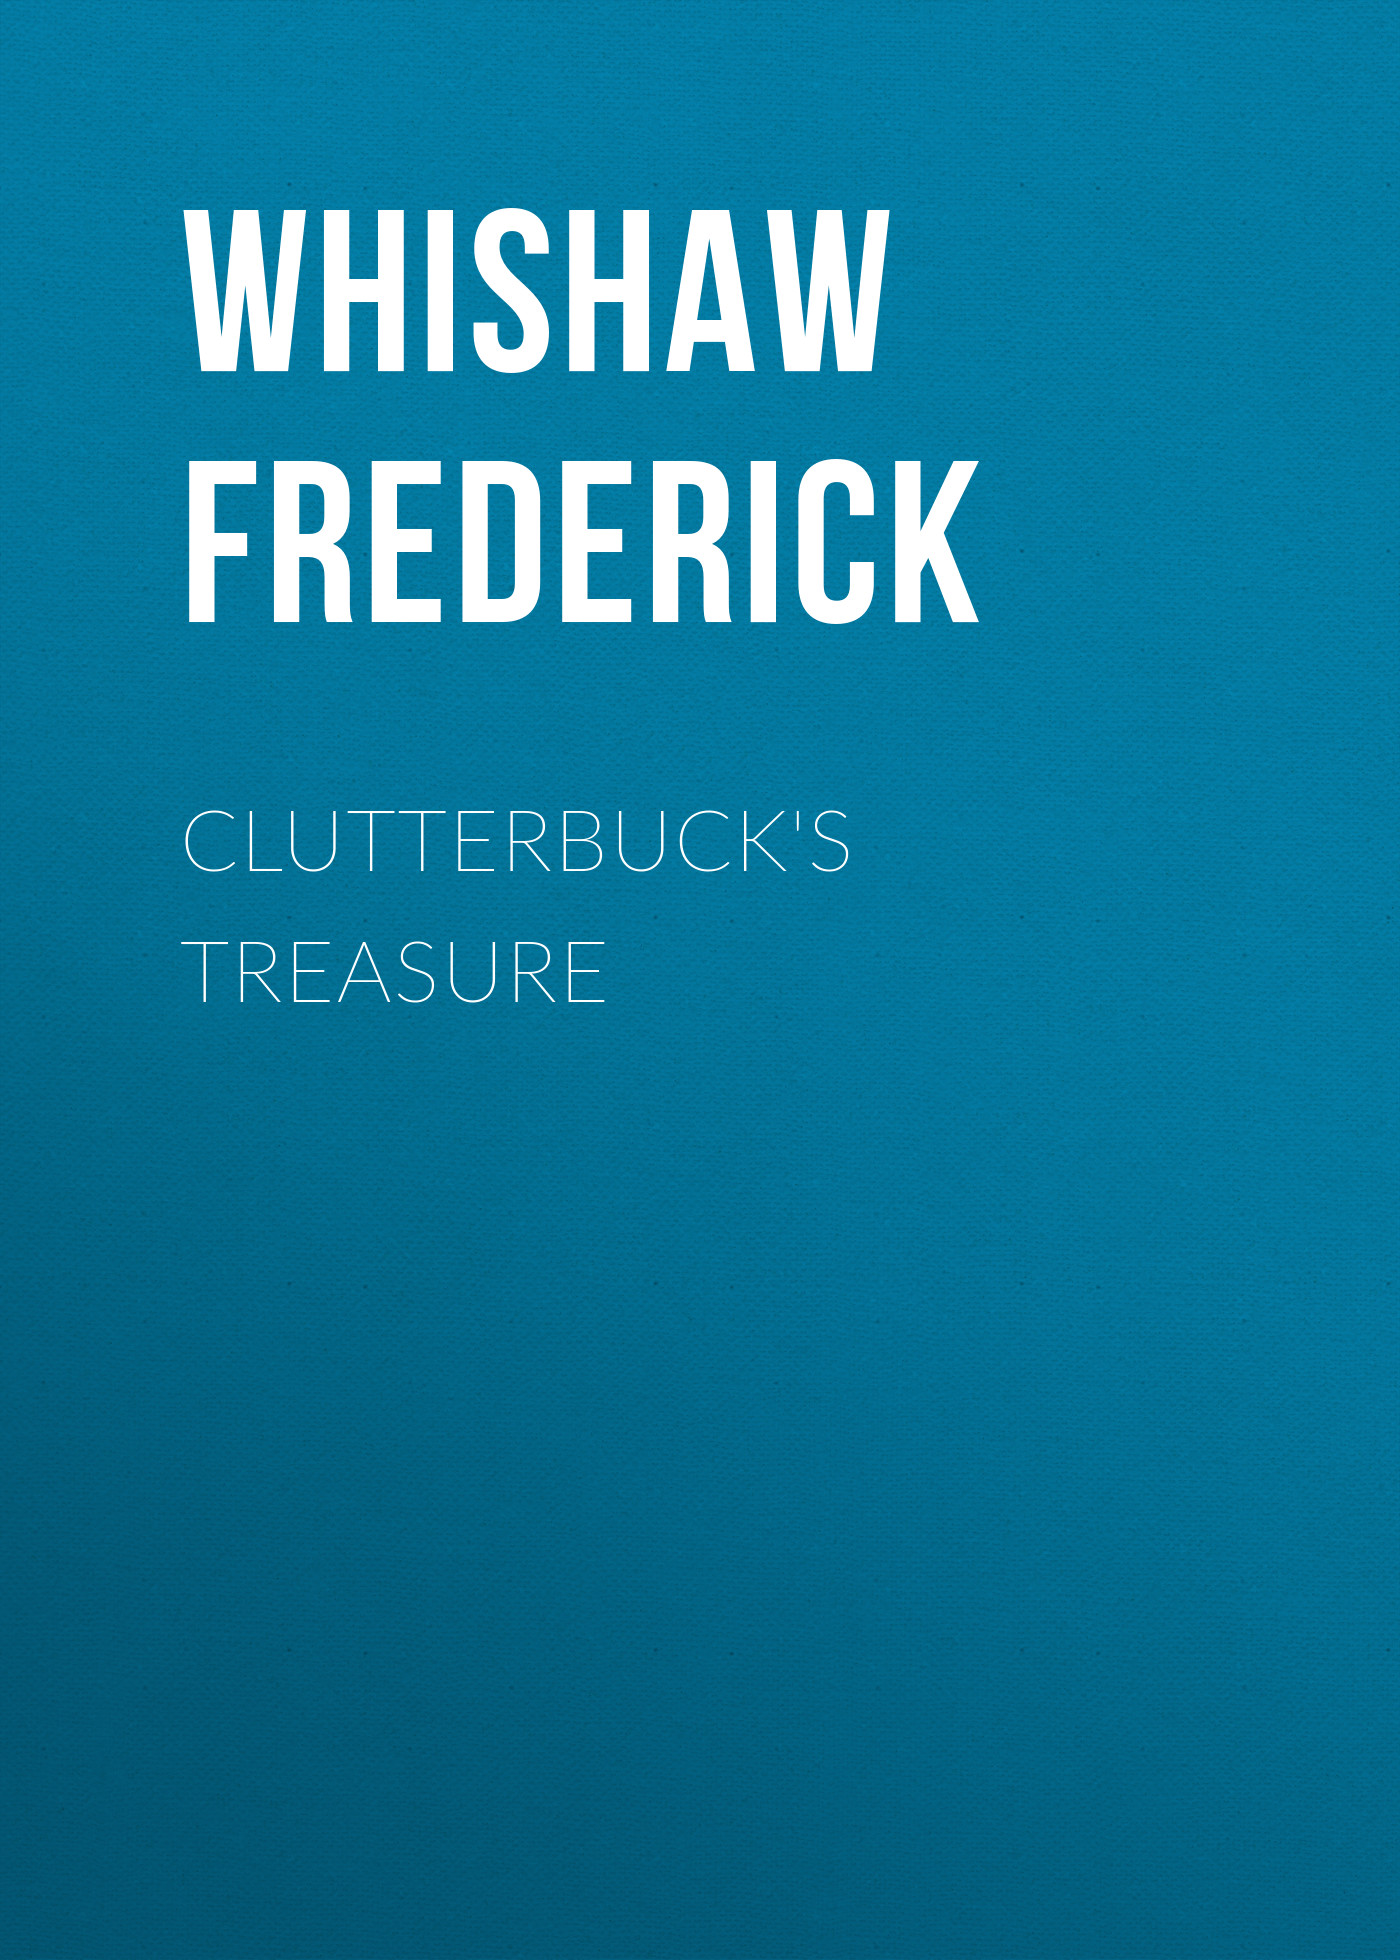 Книга Clutterbuck's Treasure из серии , созданная Frederick Whishaw, может относится к жанру Зарубежная классика, Зарубежная старинная литература. Стоимость электронной книги Clutterbuck's Treasure с идентификатором 34337762 составляет 0 руб.